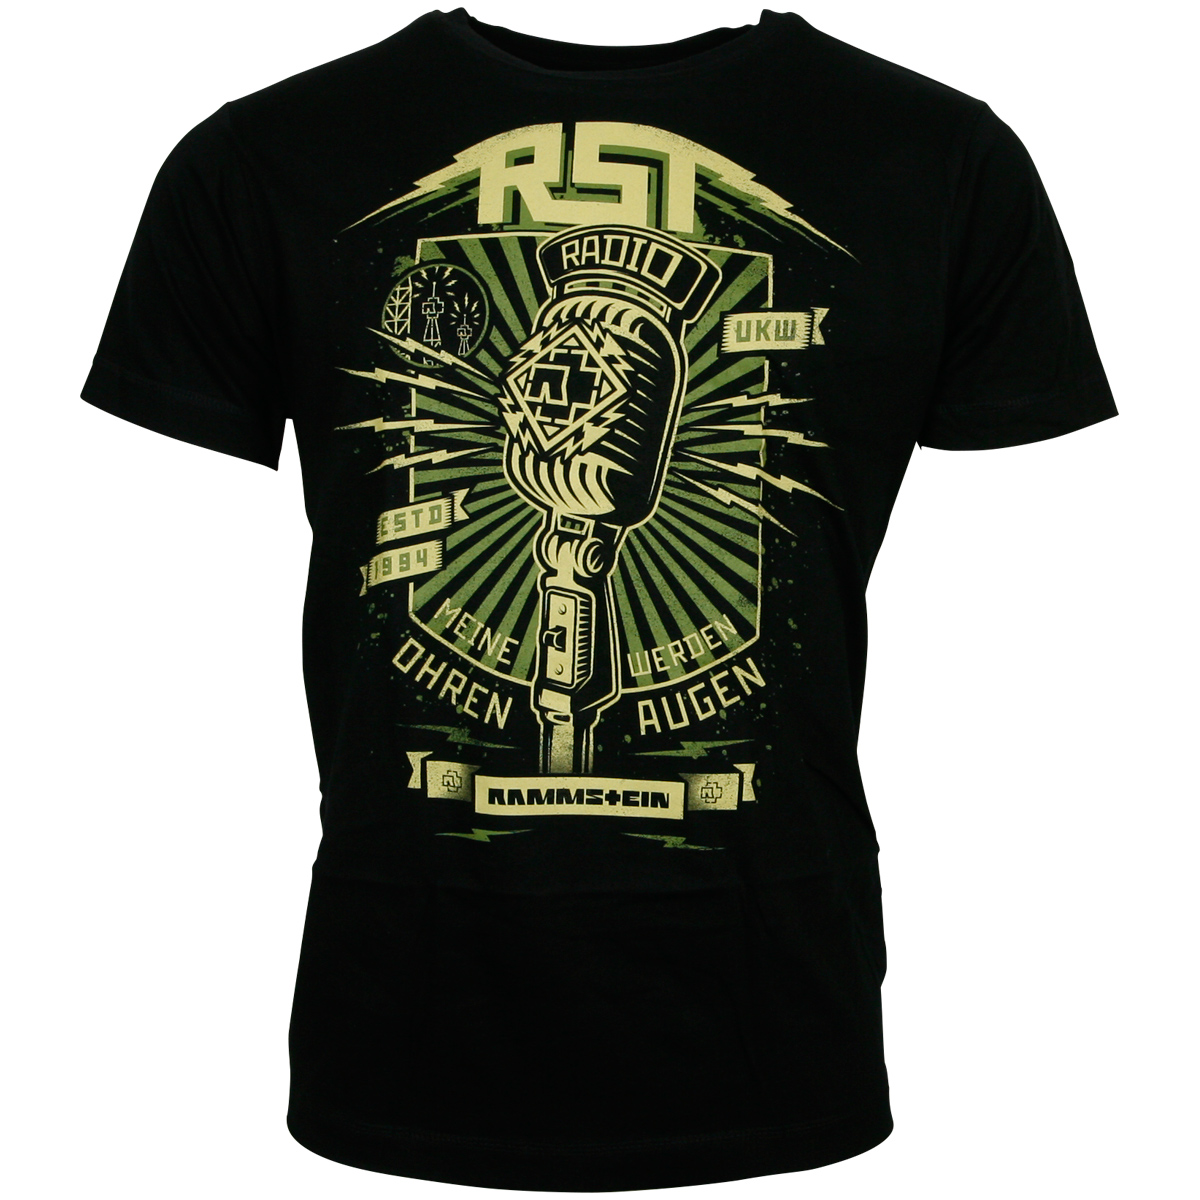 Rammstein - Schwarzes T-Shirt Radio